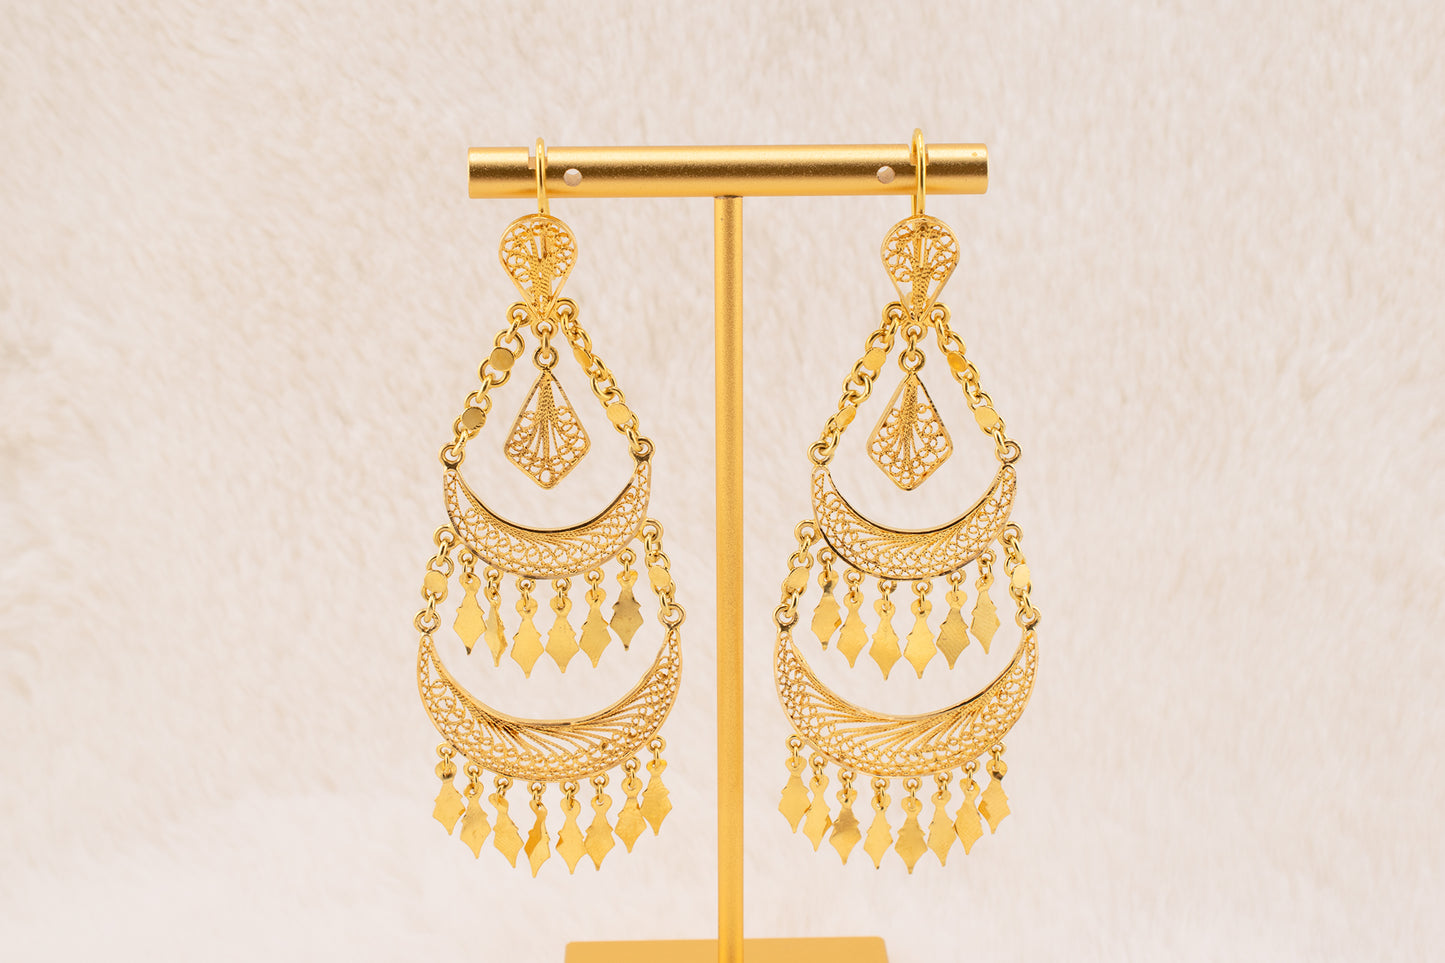 Vintage 18 Karat Yellow Gold Large Chandelier Fancy, Eclectic, Boho Dangle Earrings 3.5 Inch Drop